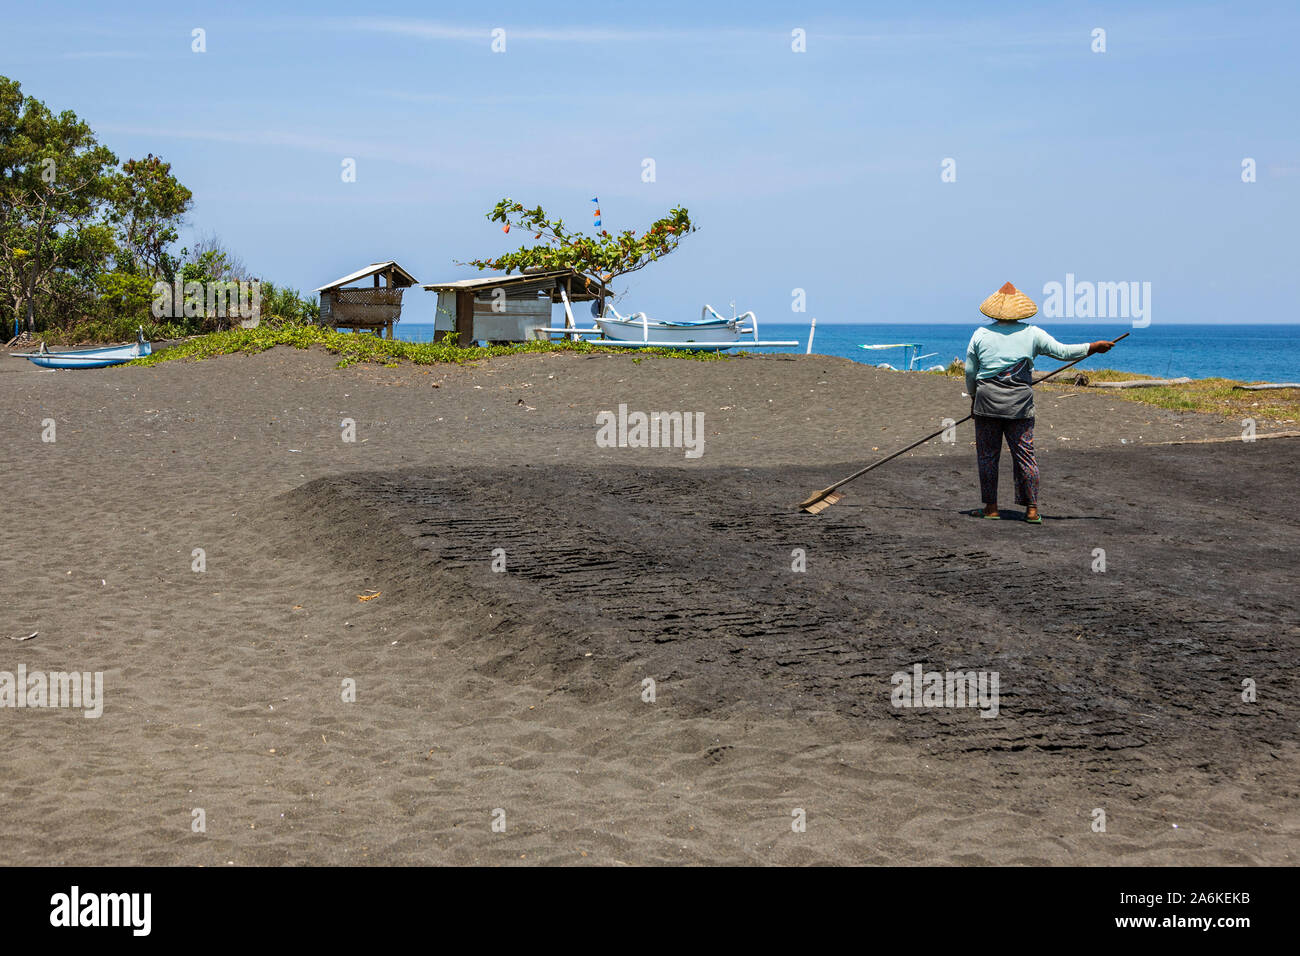 Donna rastrellatura beach per produrre il sale di mare nella baia di Amuk, Bali Orientale, Indonesia, Asia sud-orientale, Asia Foto Stock